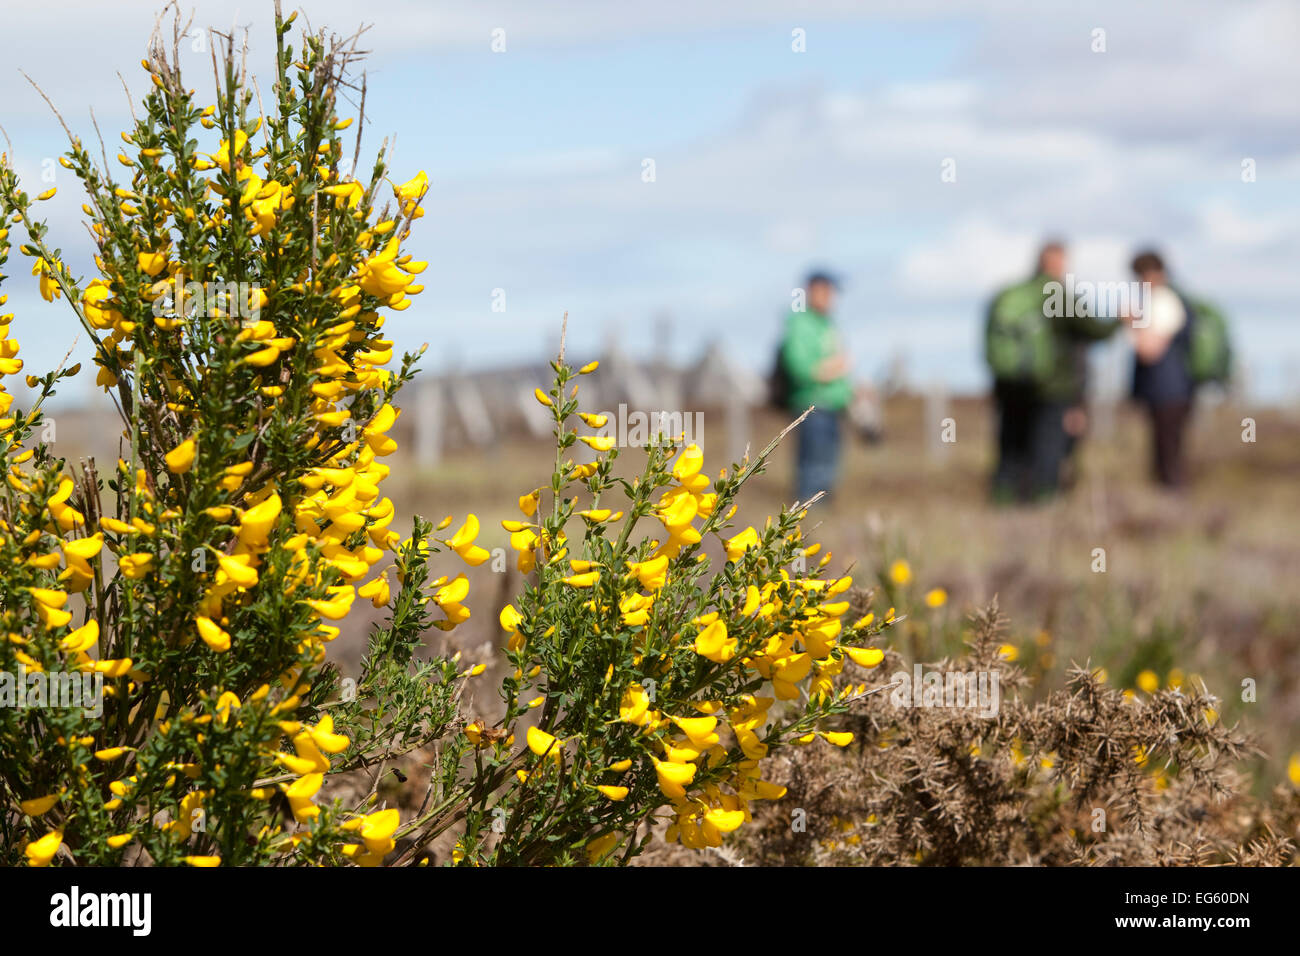 Sur la nature de la famille marche à flux Forsinard RSPB avec bush ajoncs en fleurs au premier plan, le débit pays, Caithness, Highland, Sc Banque D'Images